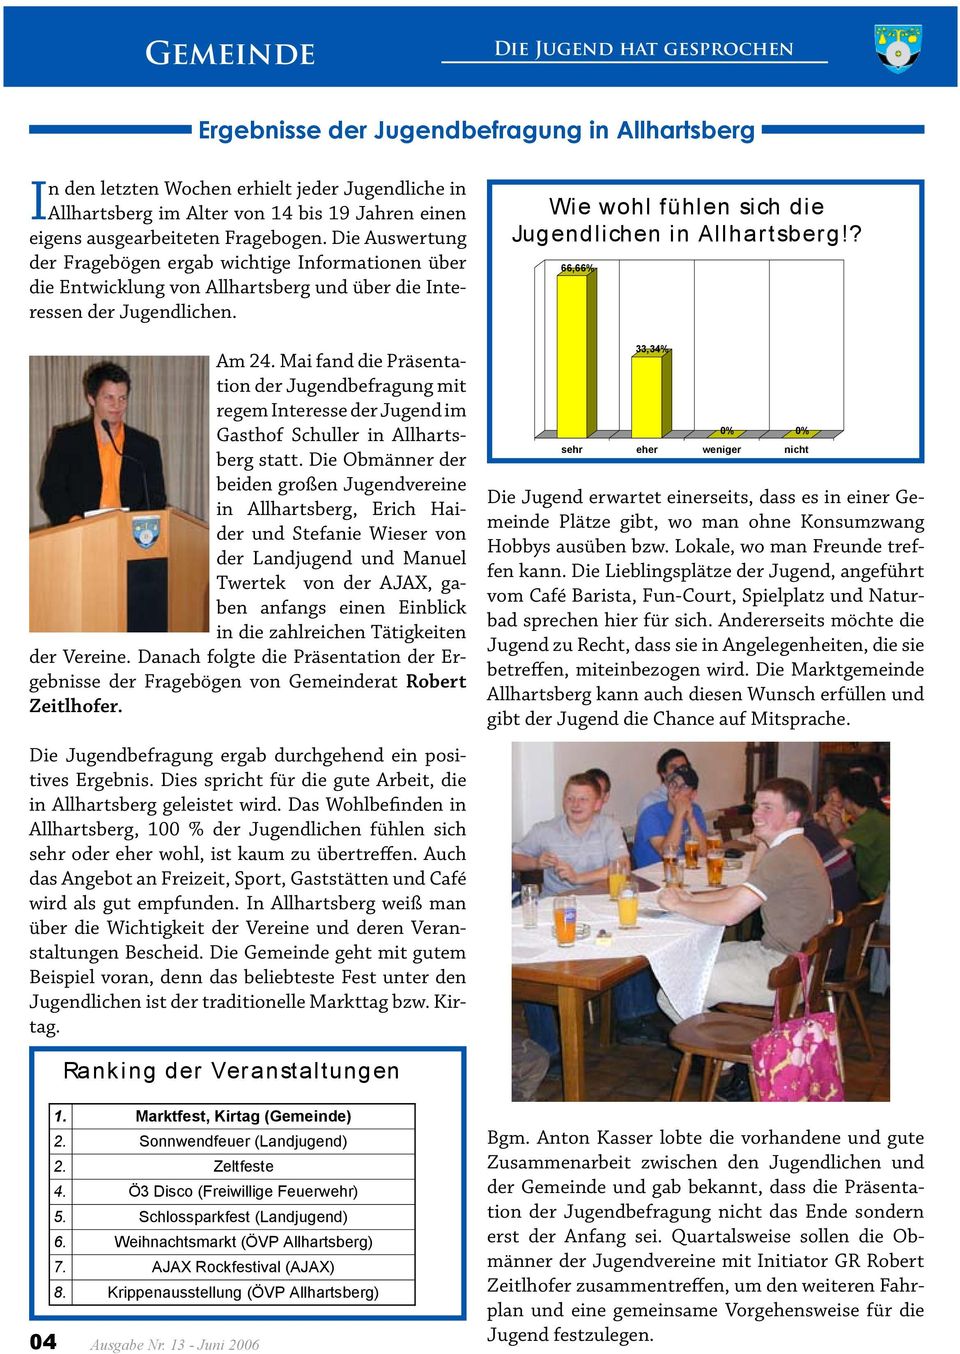 Wie wohl fühlen sich die Jugendlichen in Allhartsberg!? 66,66% Am 24. Mai fand die Präsentation der Jugendbefragung mit regem Interesse der Jugend im Gasthof Schuller in Allhartsberg statt.